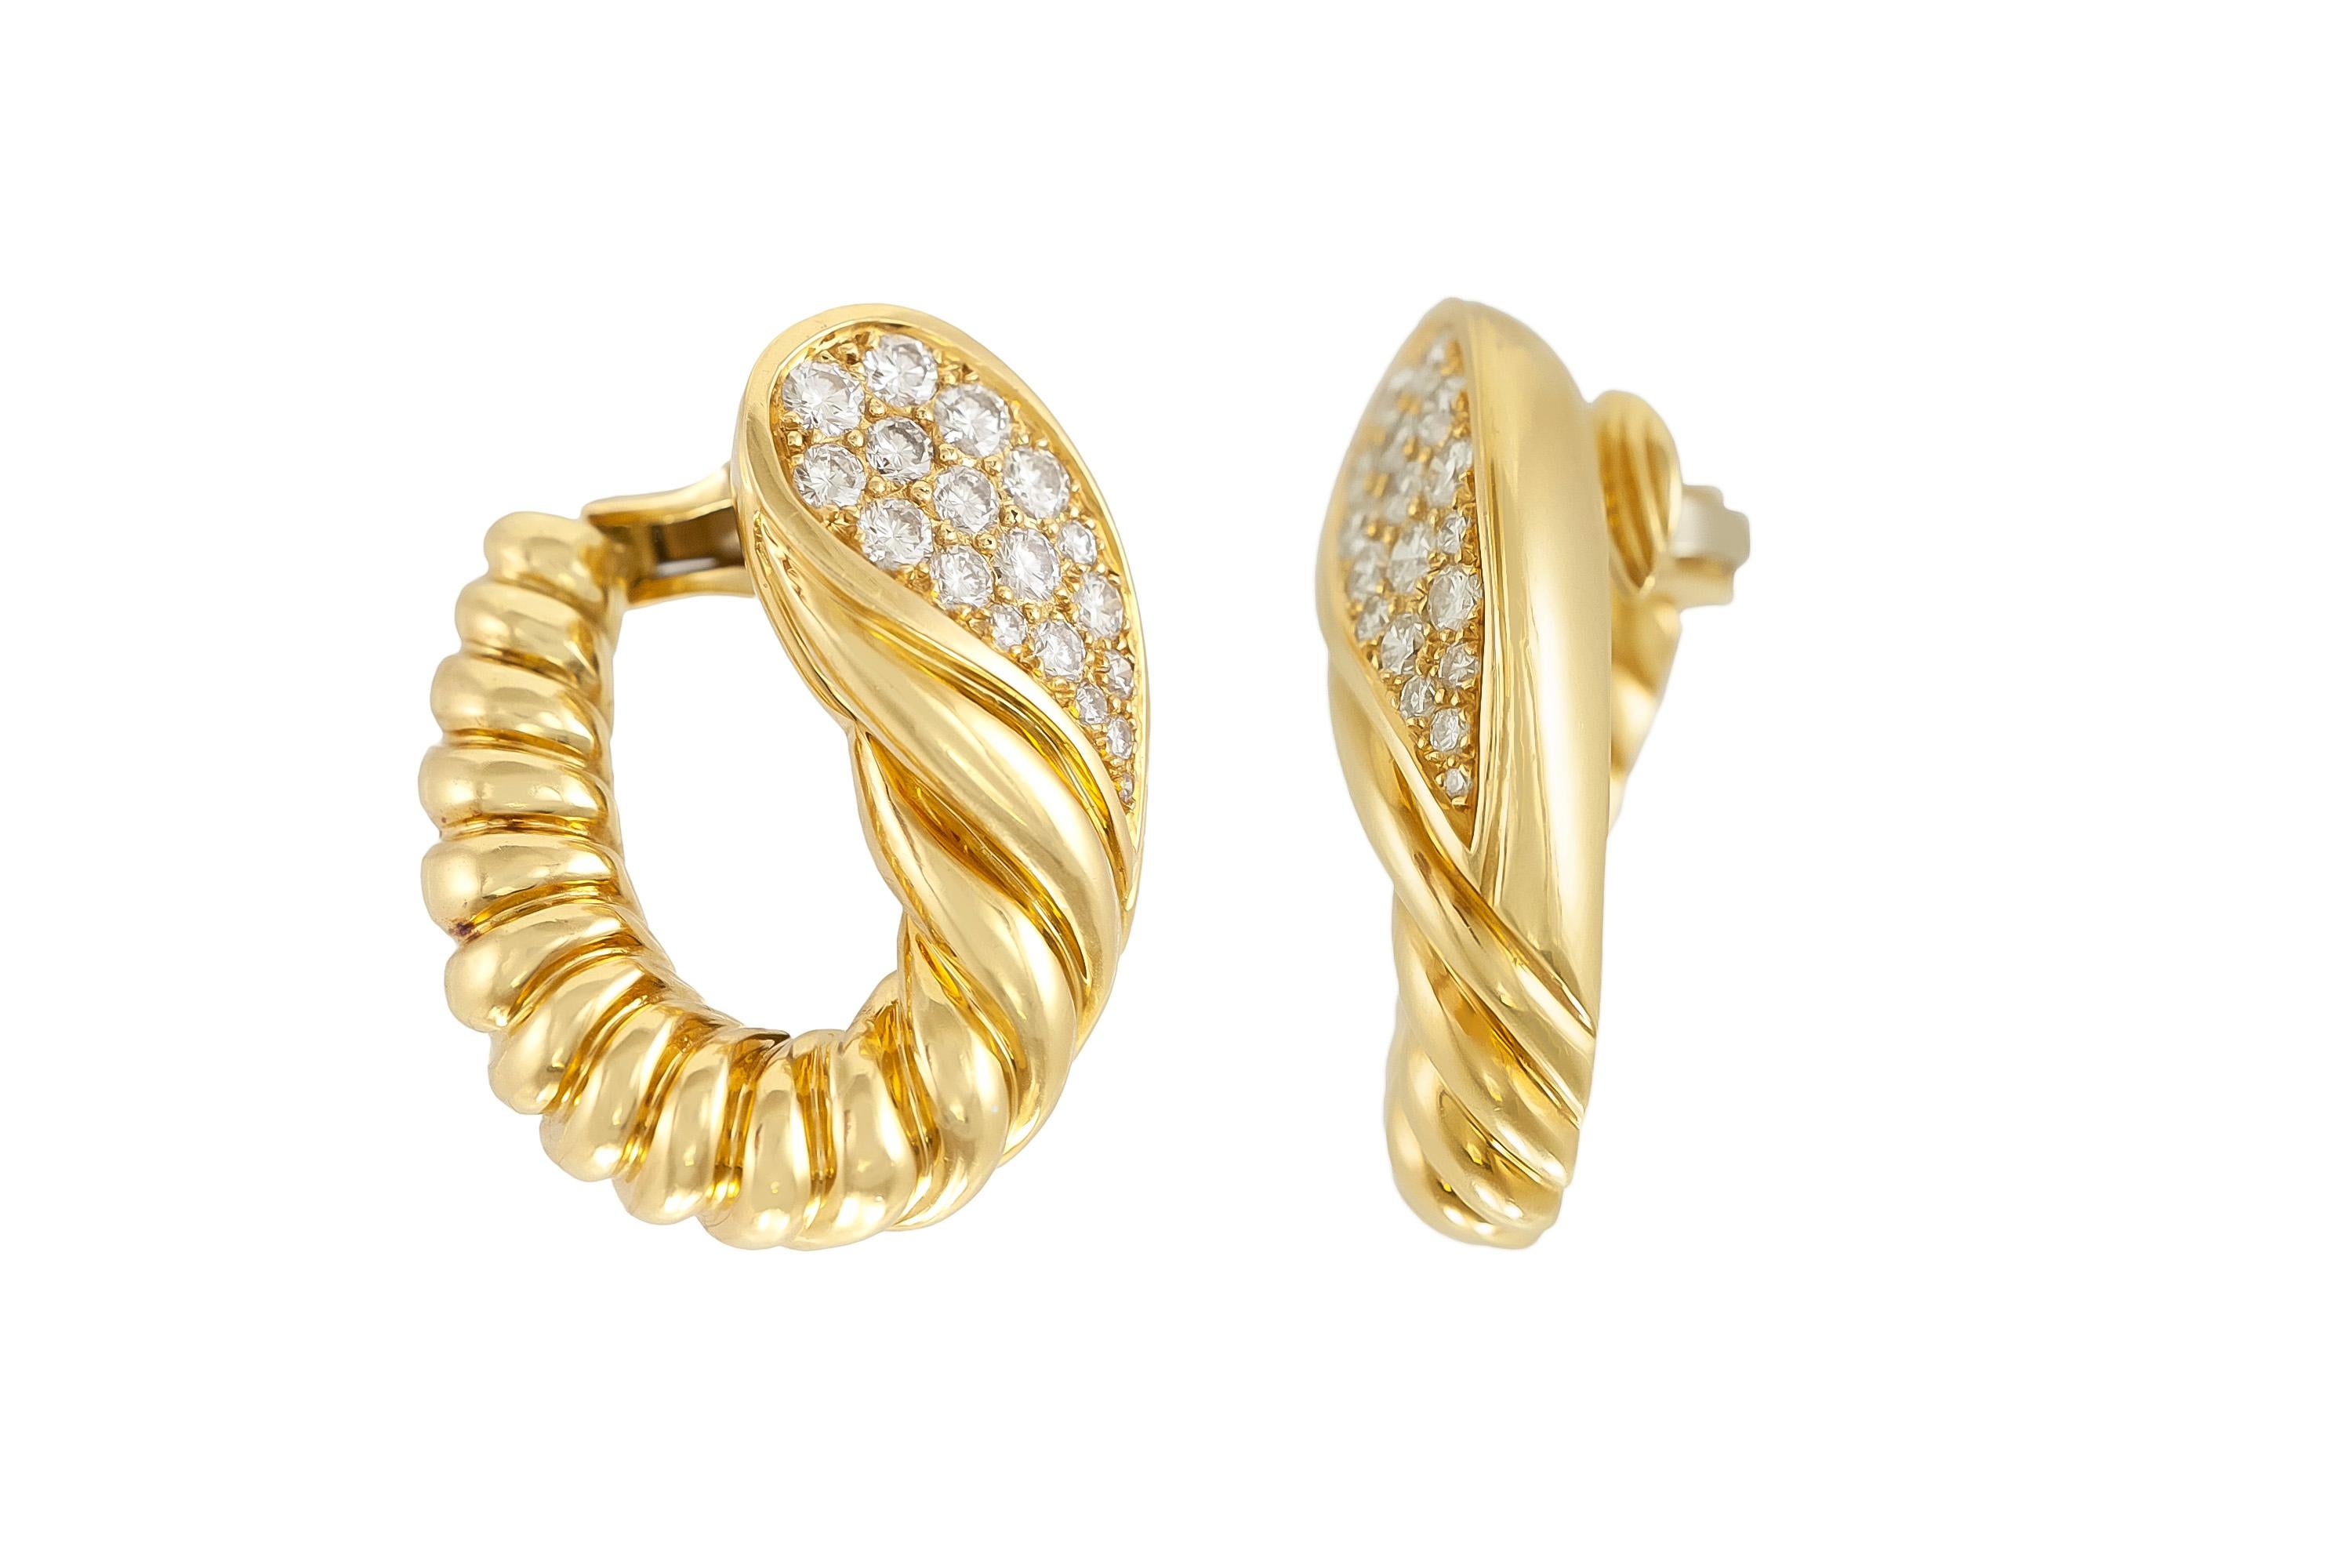 Les magnifiques boucles d'oreilles Tallarico sont finement réalisées en or jaune 18 carats et en diamants pesant environ 3,00 carats au total.
Circa 1970.
Signé par Tallarico.